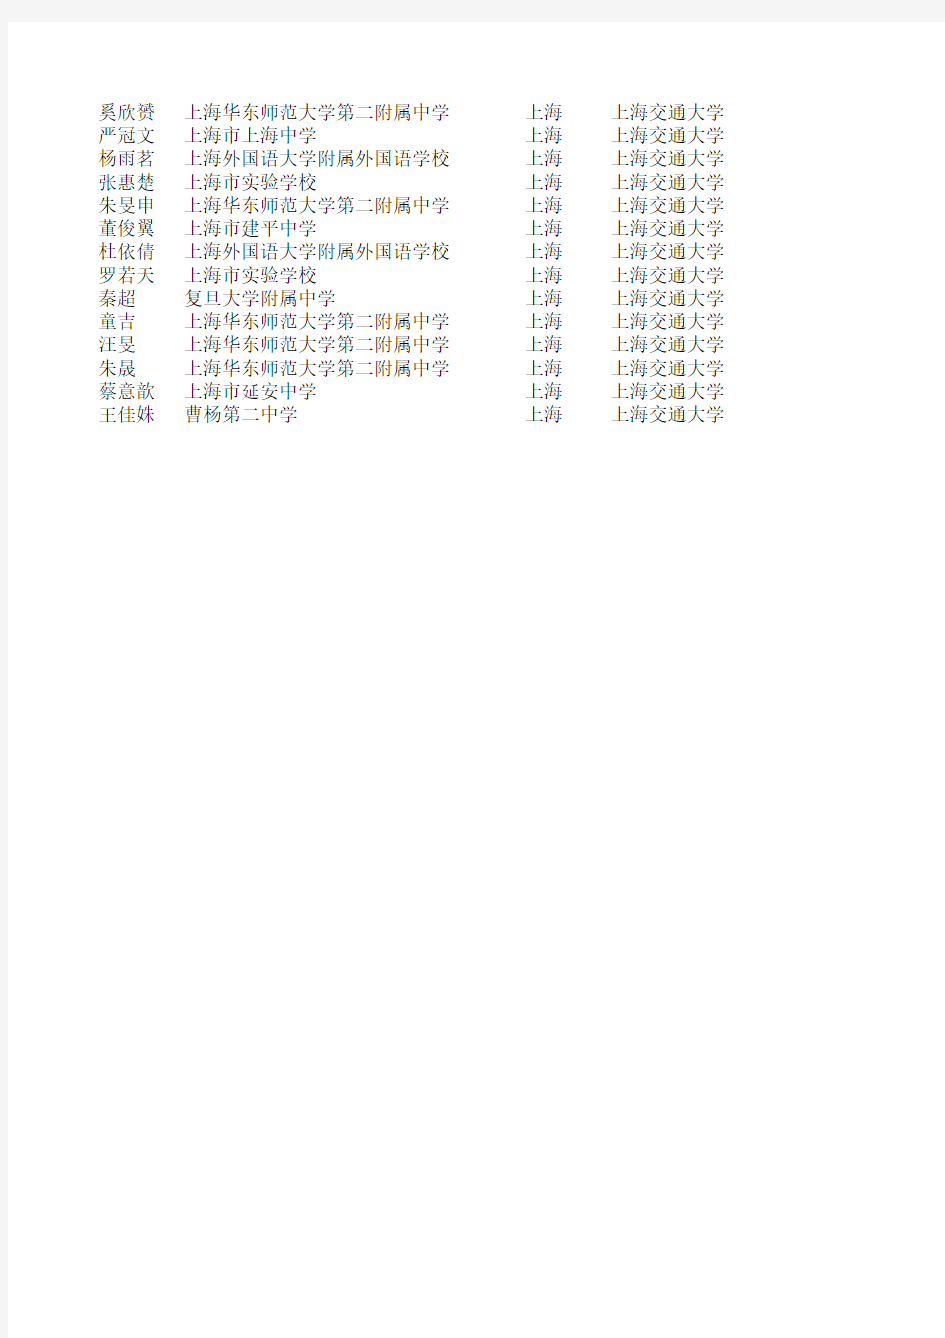 2011年上海交通大学保送生名单(上海地区)